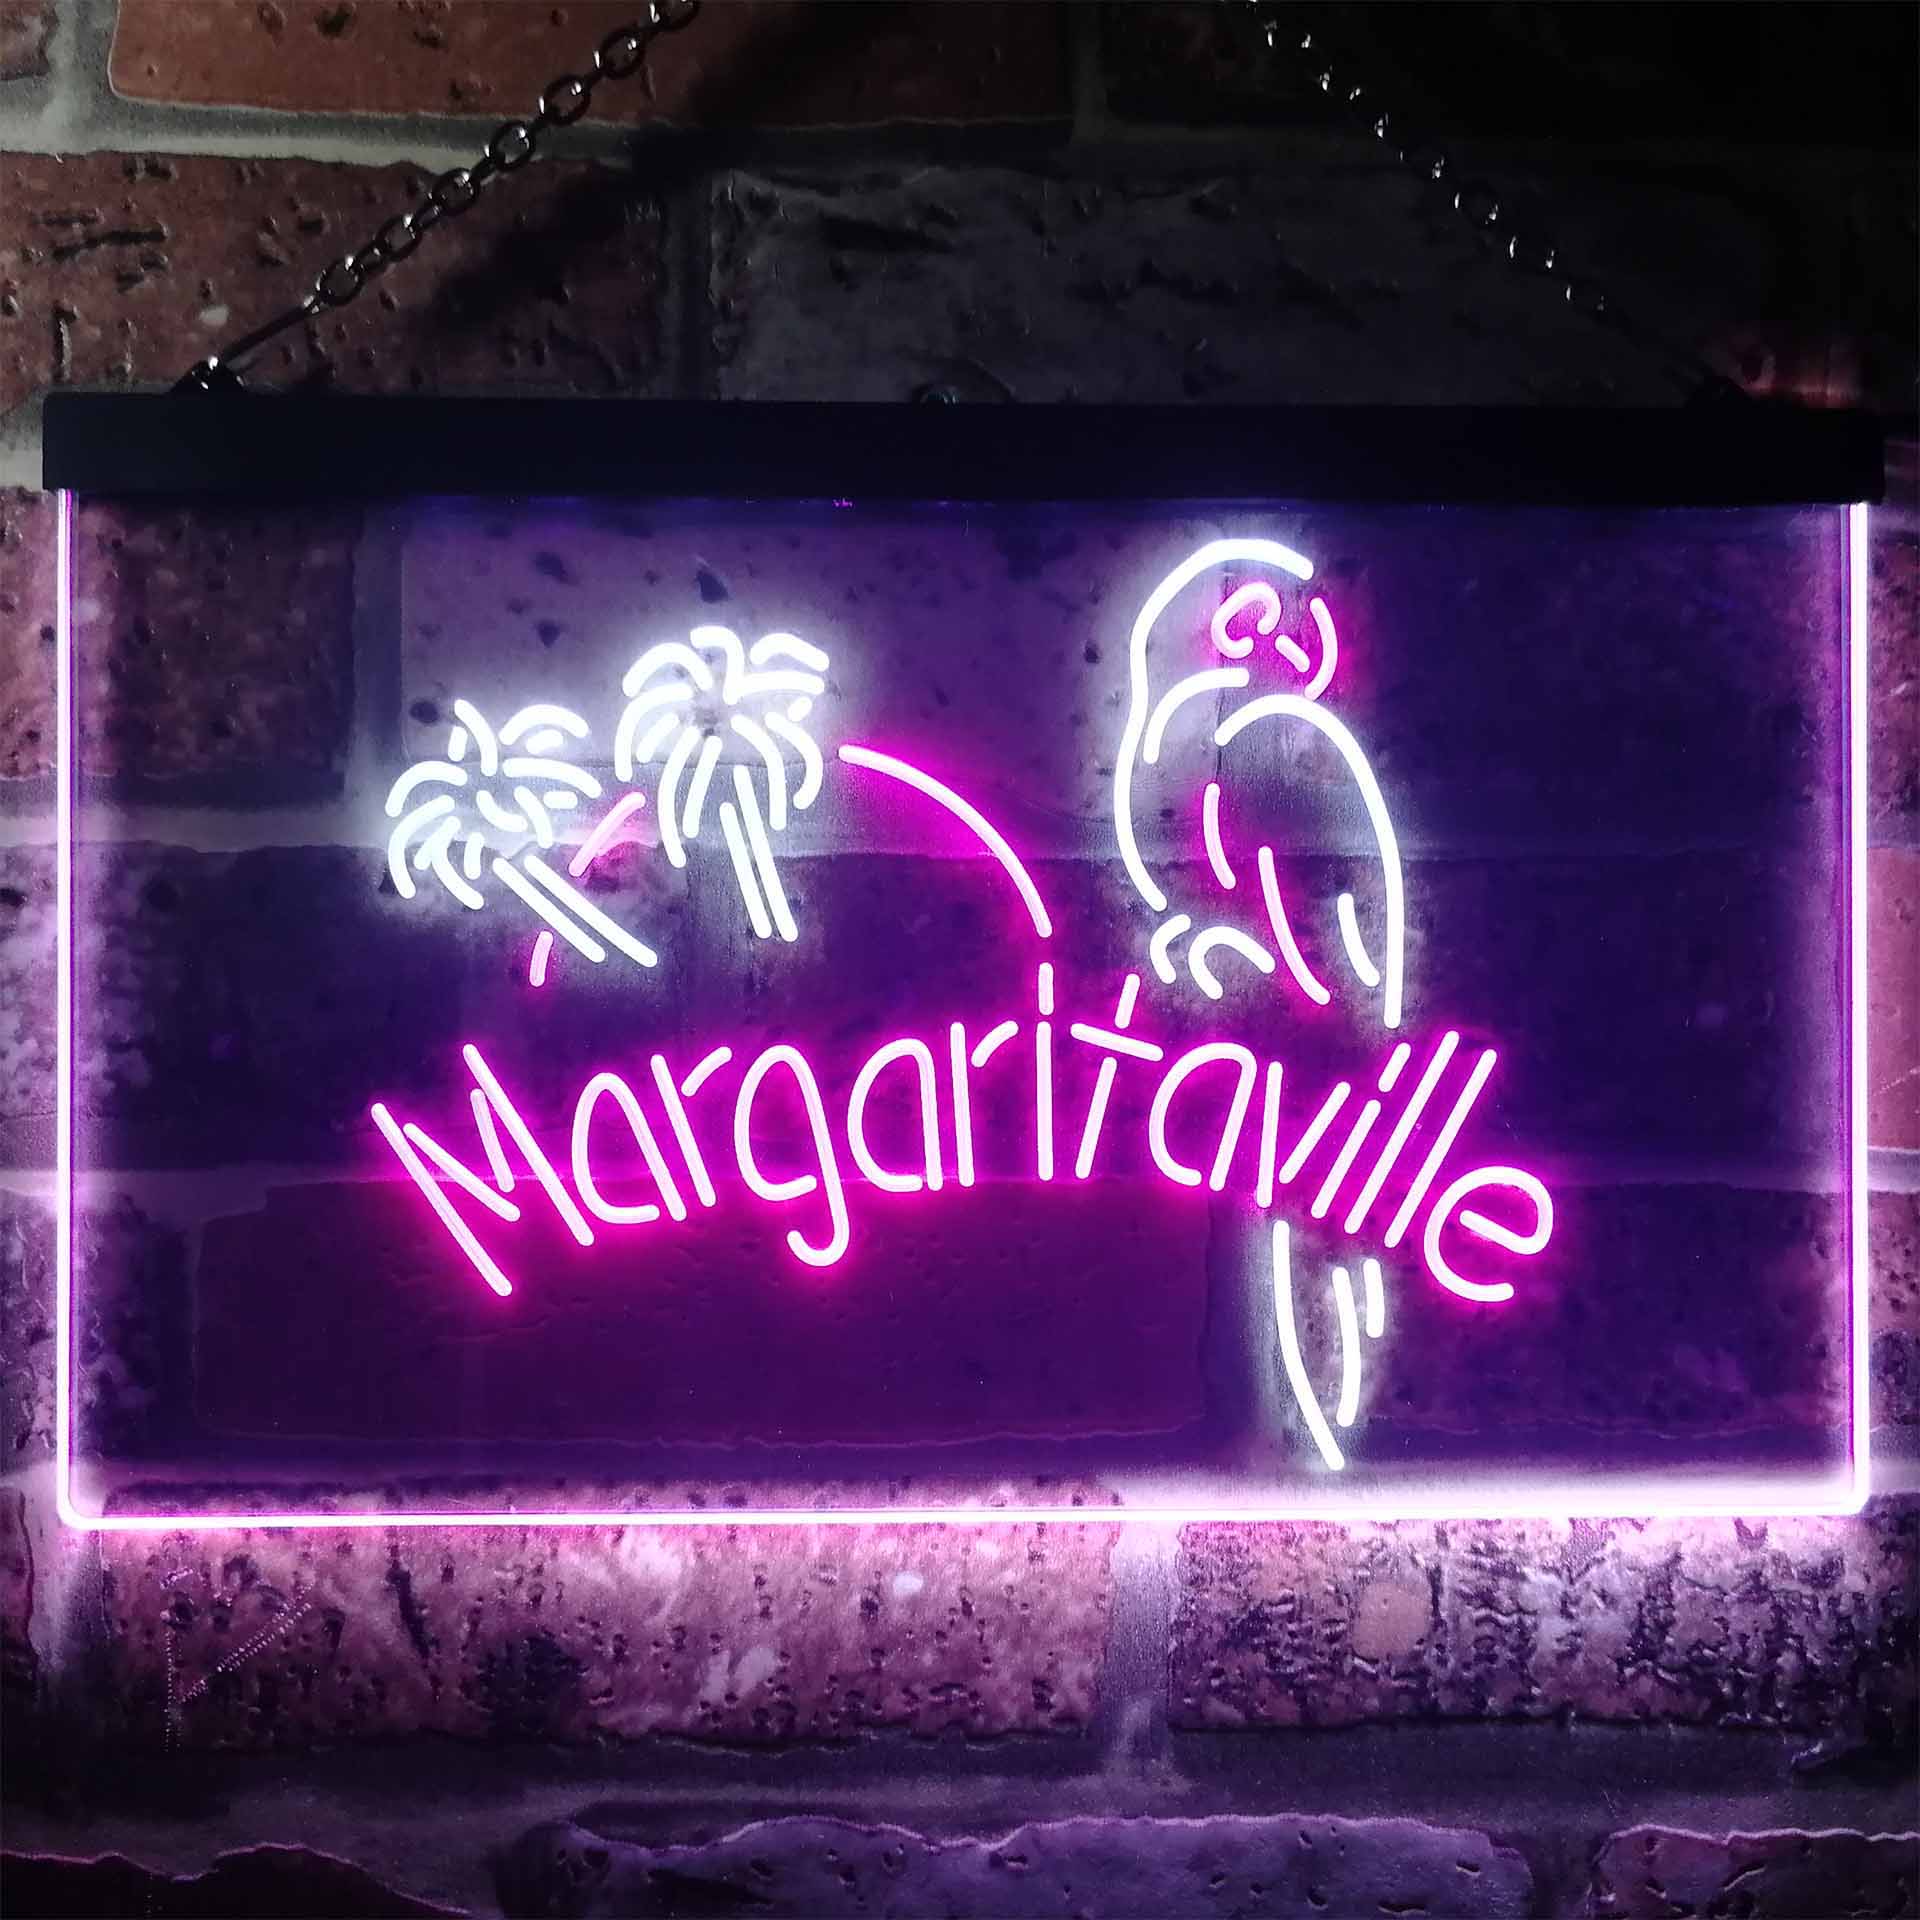 Jimmy Buffett Margaritaville Neon LED Sign